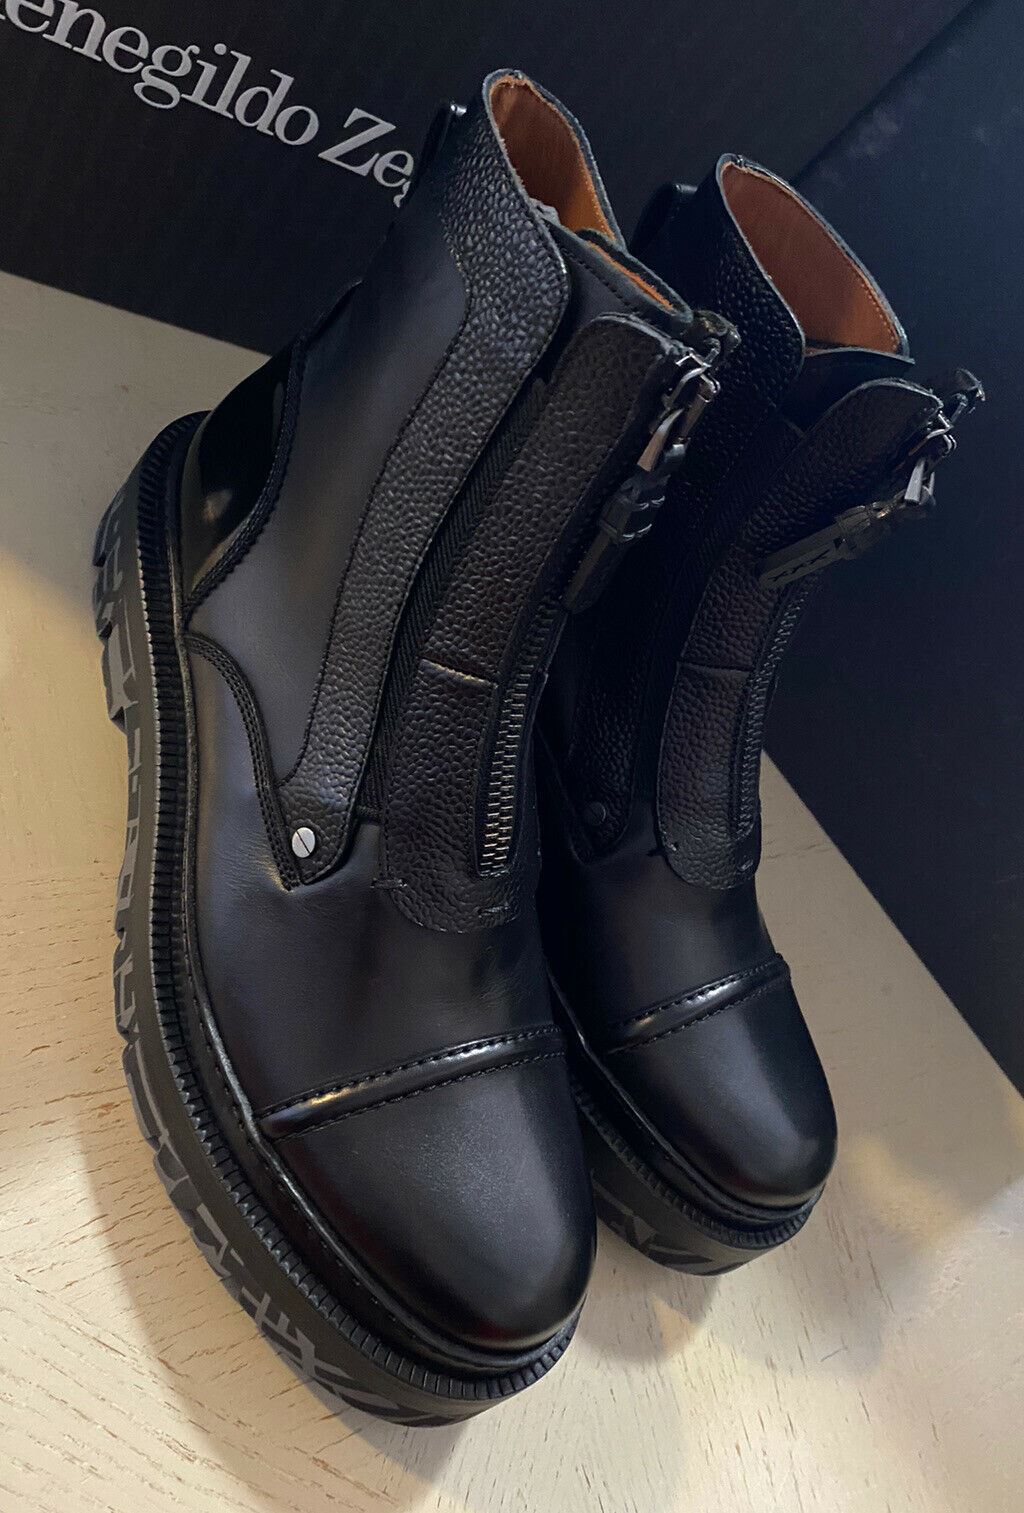 Neu $1595 Ermenegildo Zegna Couture Leder Leichte Stiefel Schuhe Schwarz 8,5 US Italien